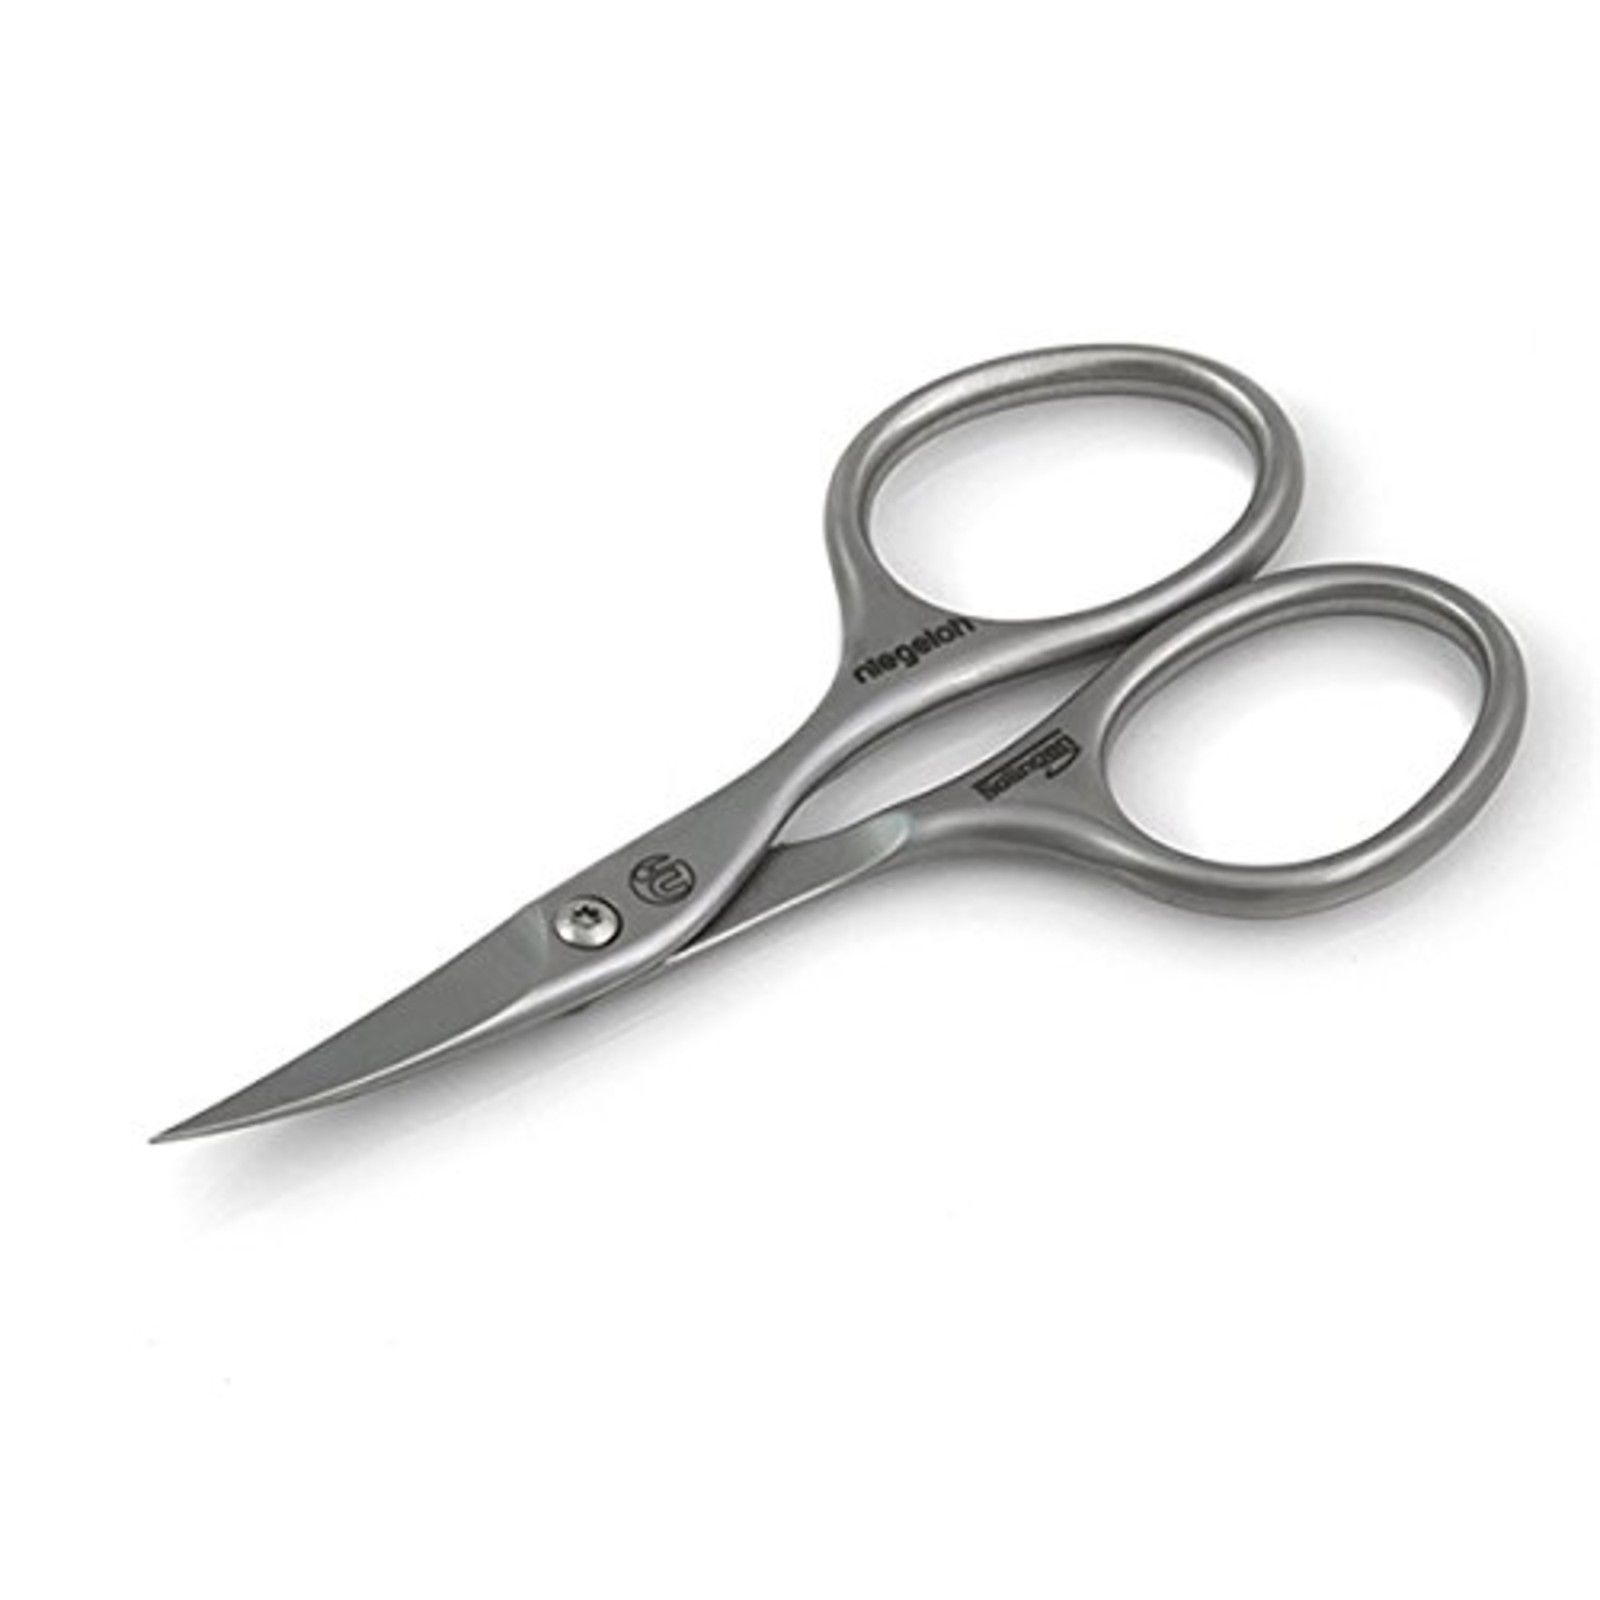 Niegeloh Stainless Steel Nail Scissors N4 Style | eBay